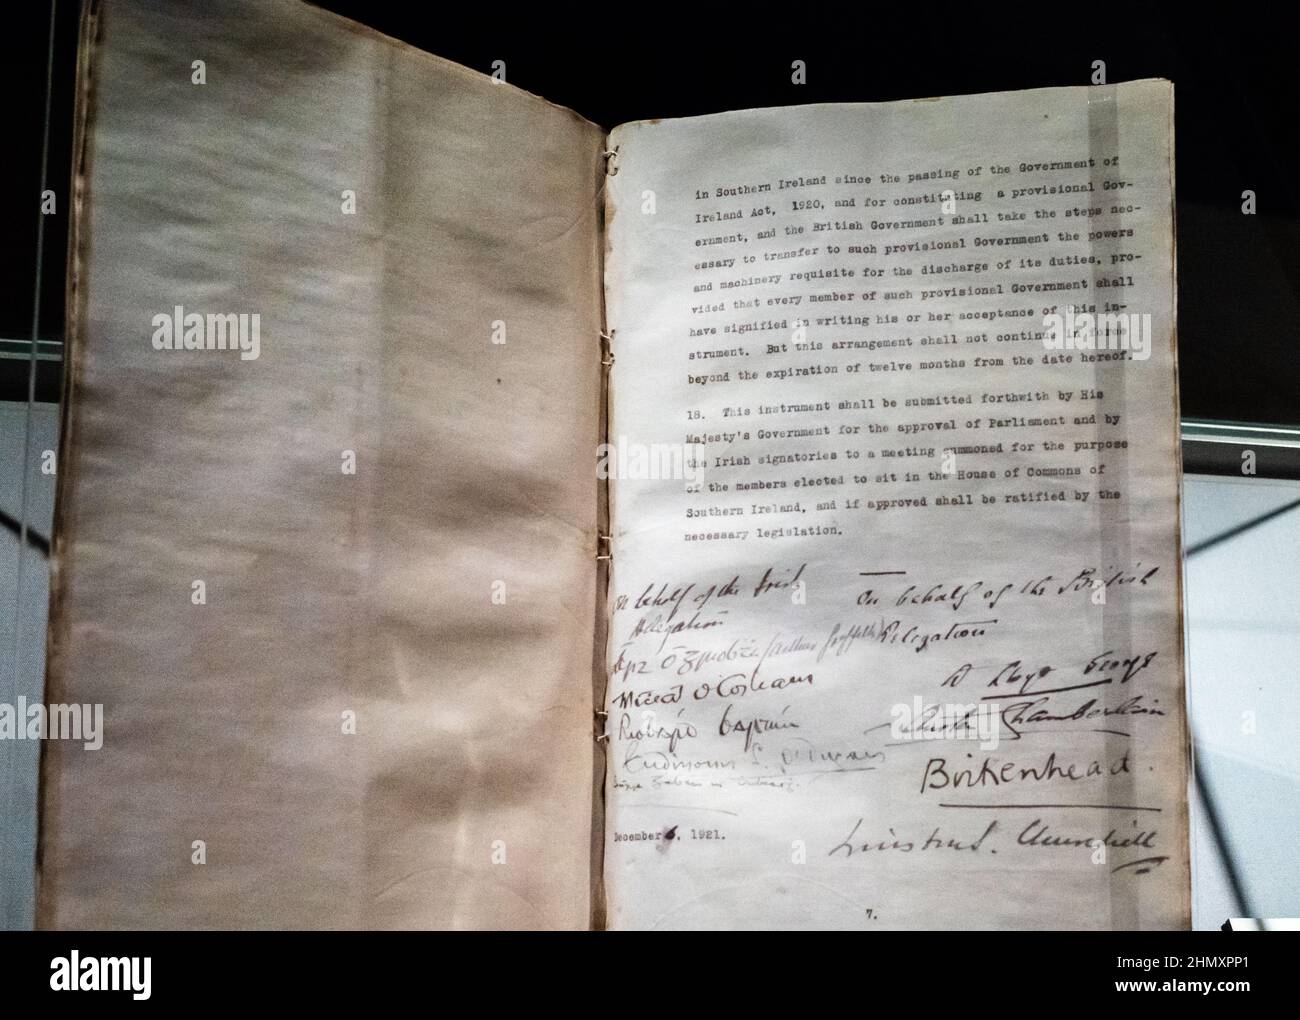 Eine signierte Originalkopie des anglo-irischen Vertrags von 1921, der den irischen Freistaat begründete, wird im Dublin Castle in Dublin, Irland, ausgestellt. Der Stockfoto